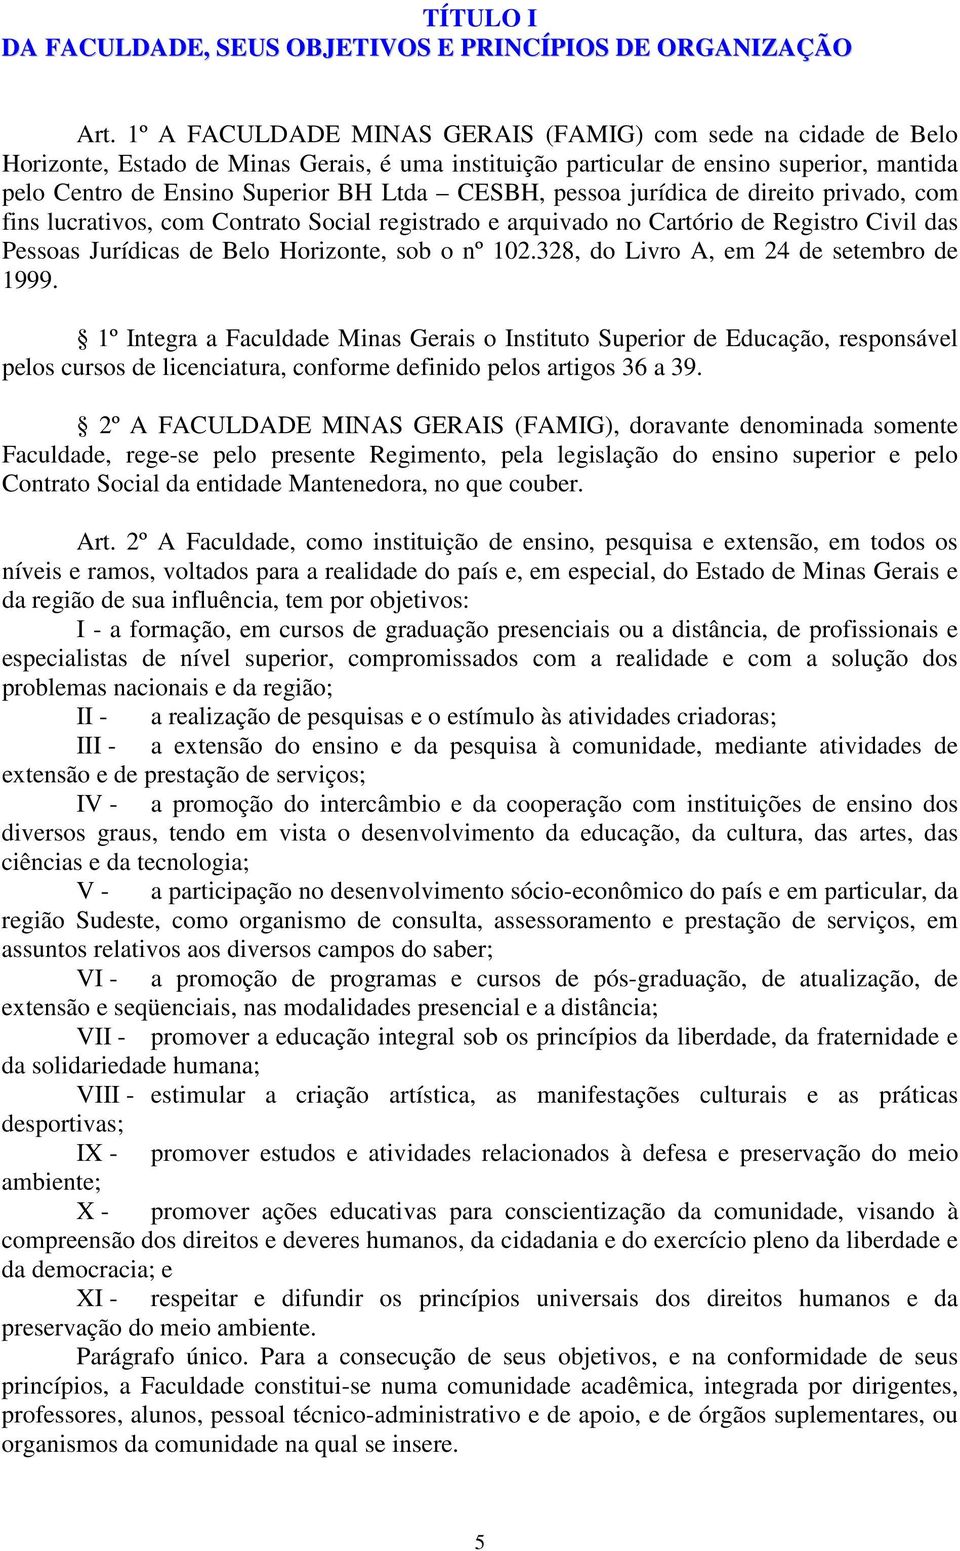 CESBH, pessoa jurídica de direito privado, com fins lucrativos, com Contrato Social registrado e arquivado no Cartório de Registro Civil das Pessoas Jurídicas de Belo Horizonte, sob o nº 102.